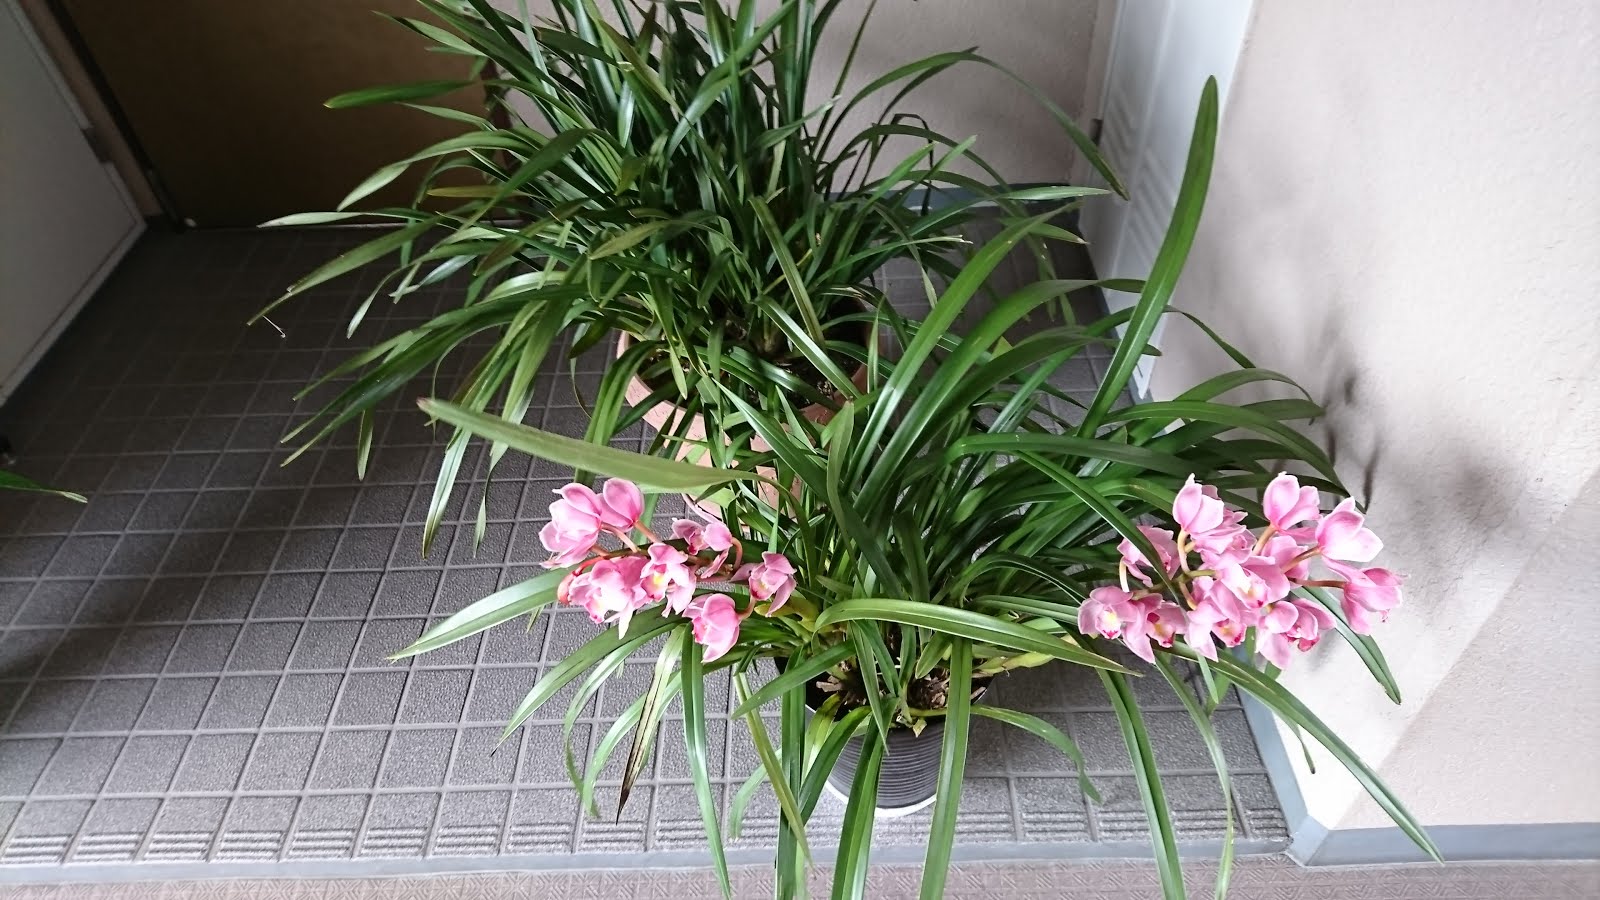 八木東一のブログ 今日 ４月２４日 朝 マンションを出るときみたらランの花の鉢が玄関に置かれていた